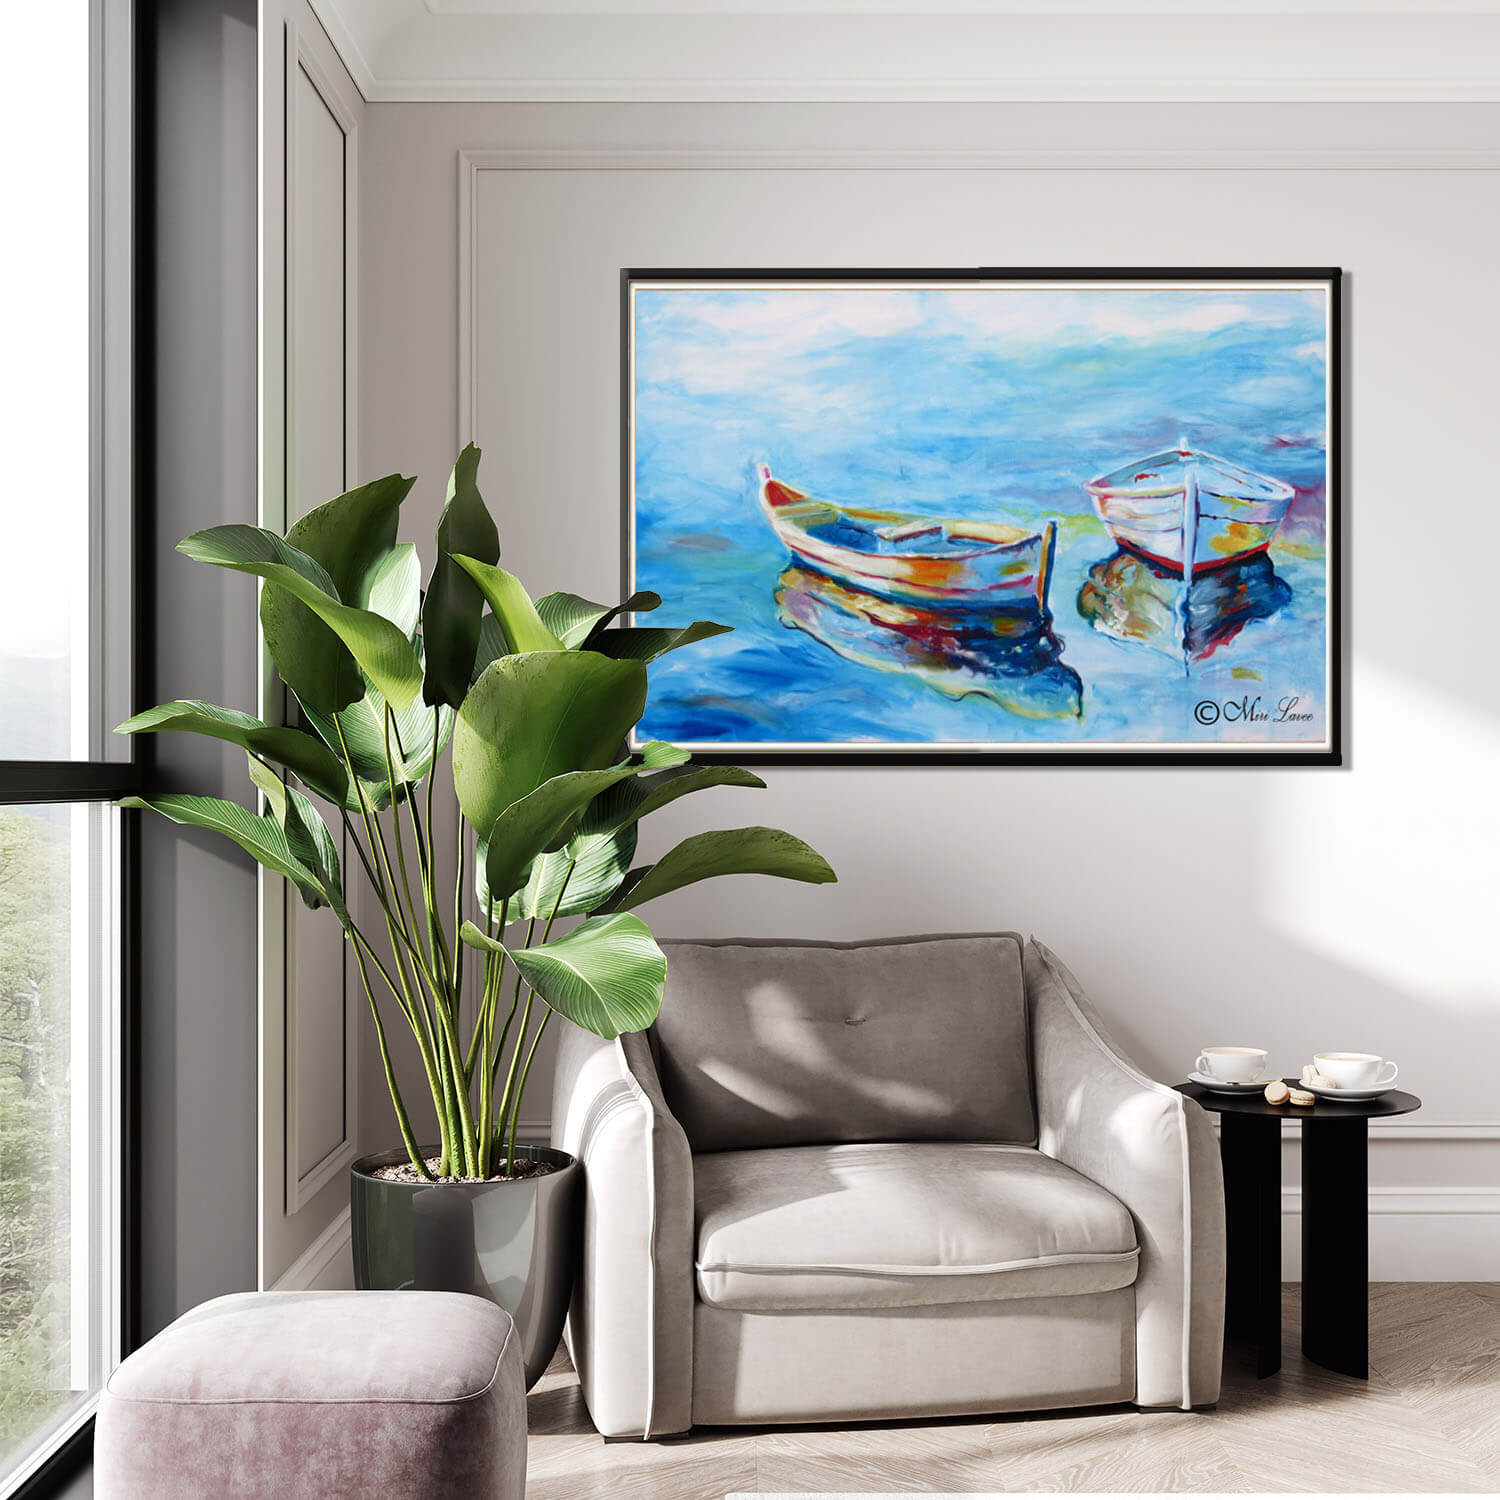 ציור של סירות ליד כורסא בסלון ציירת מירי לביא